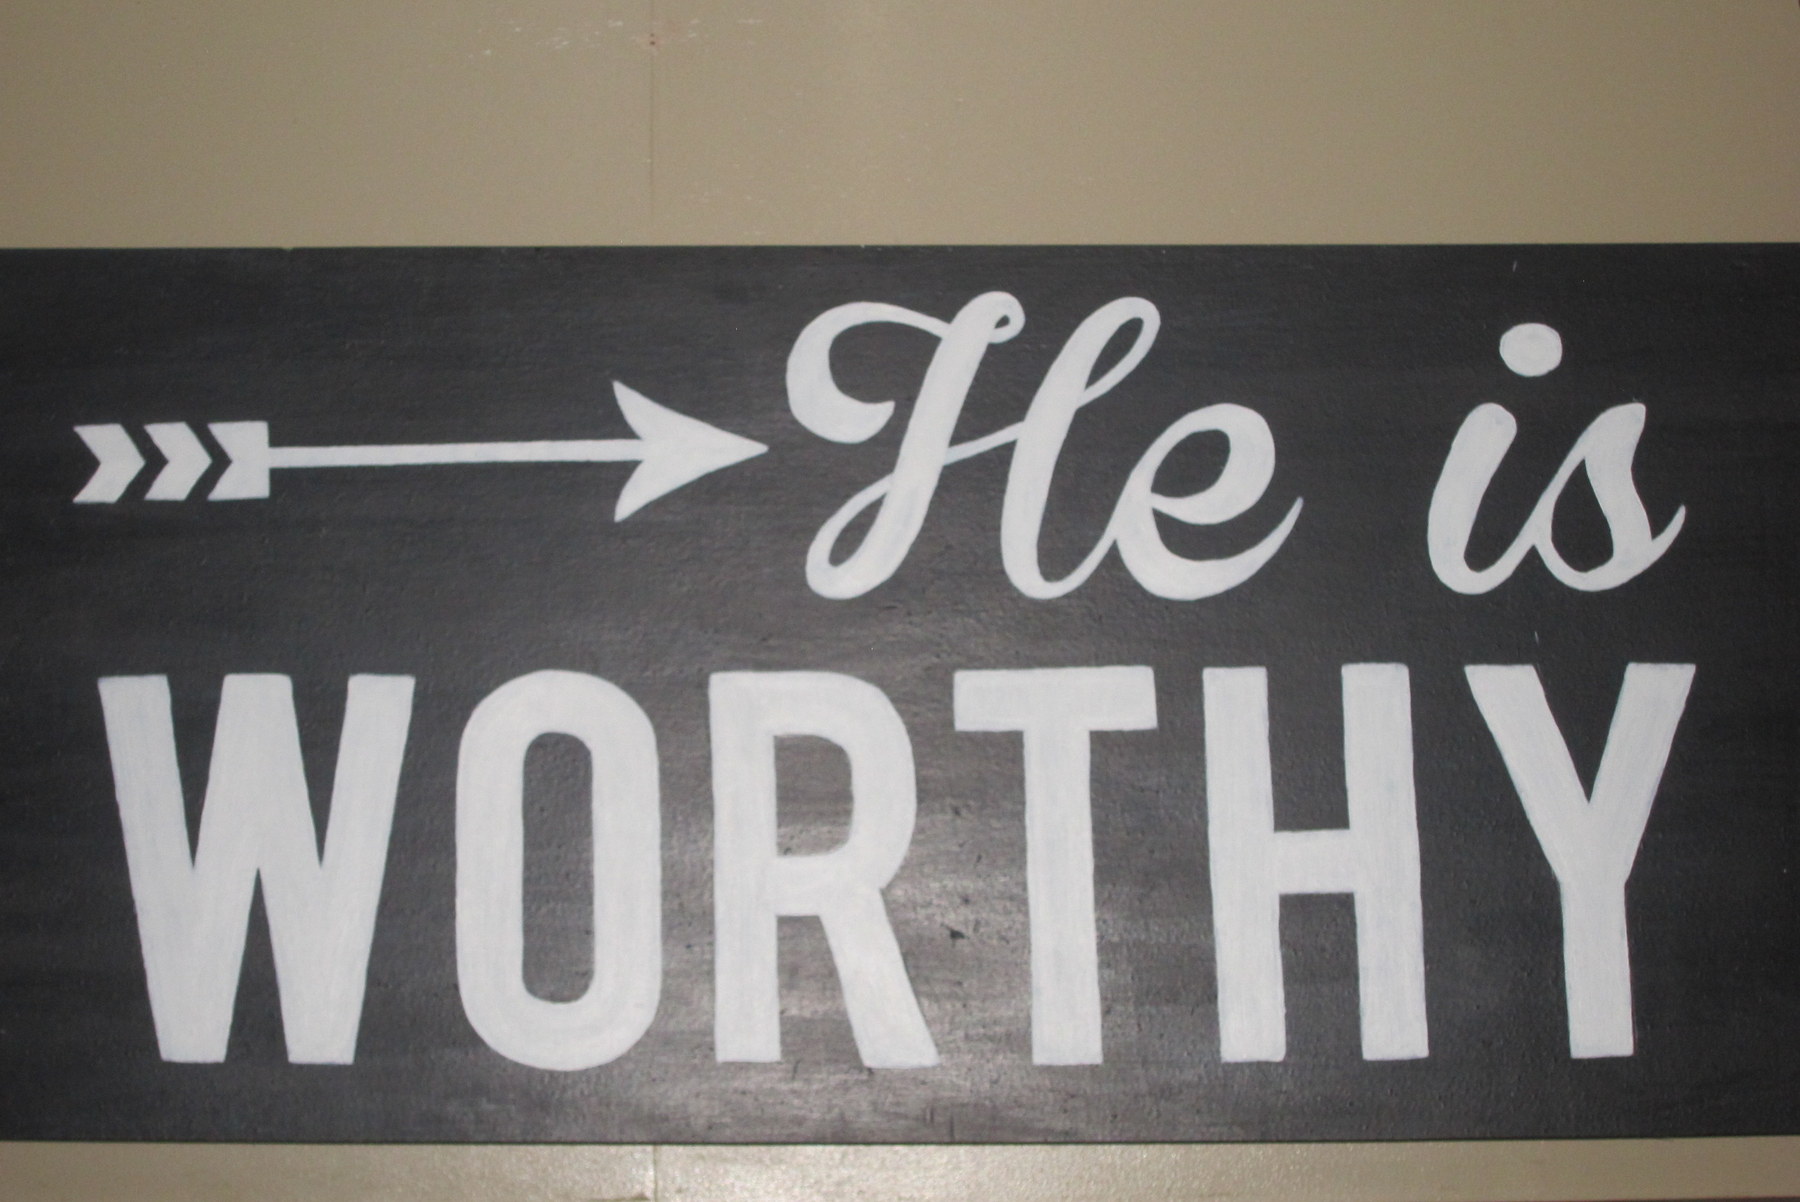 HE is Worthy!